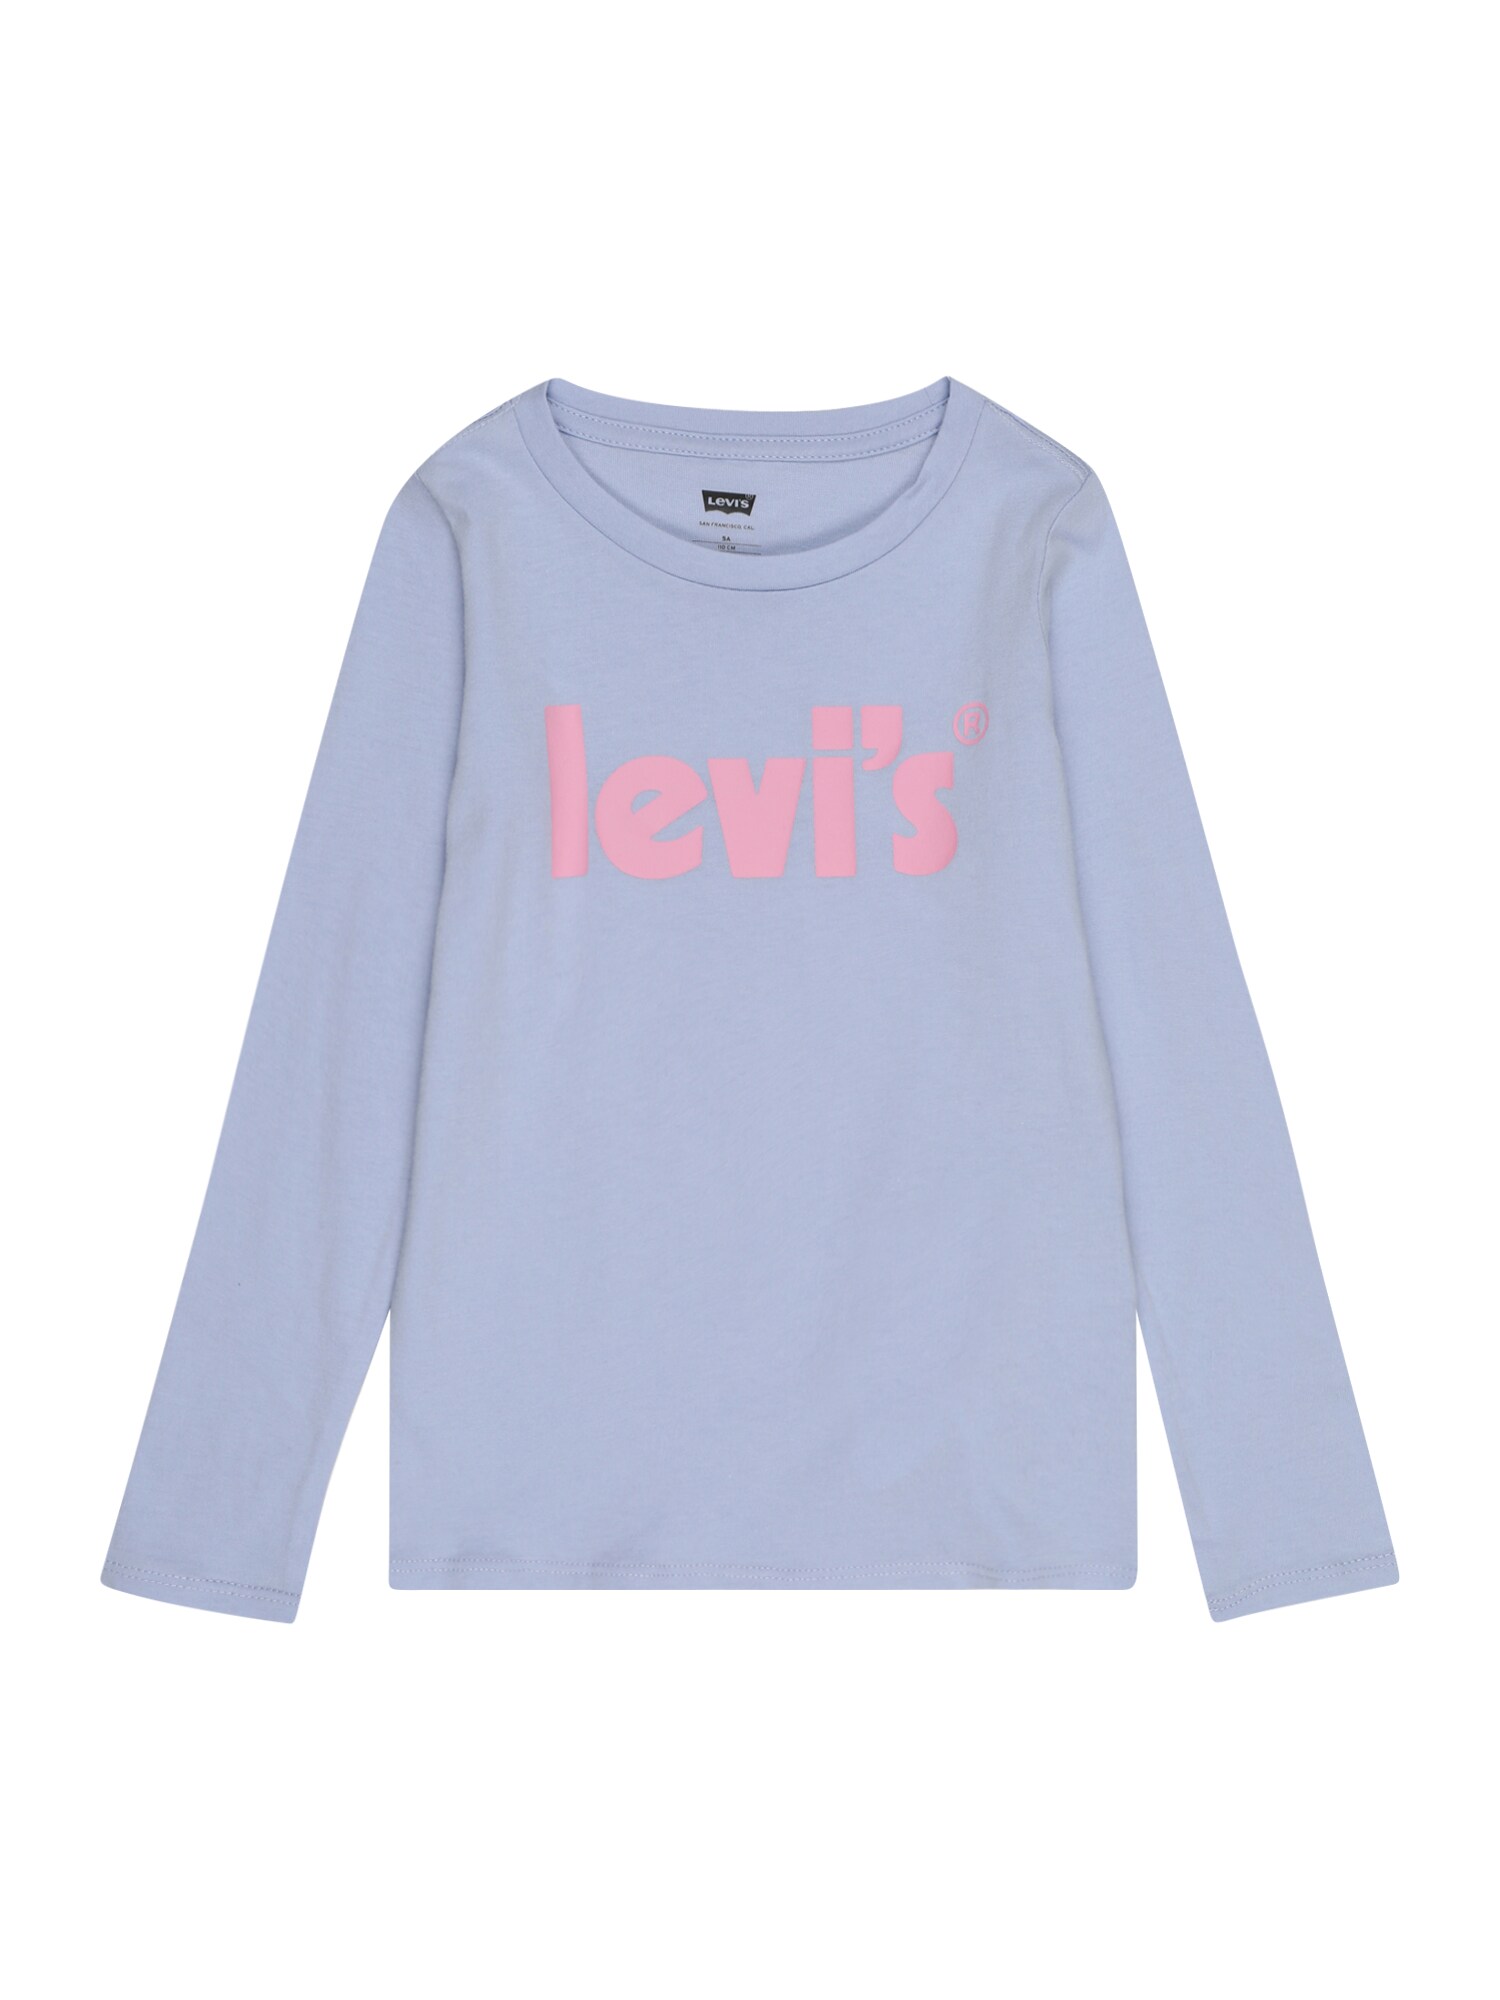 Shirt von Levis